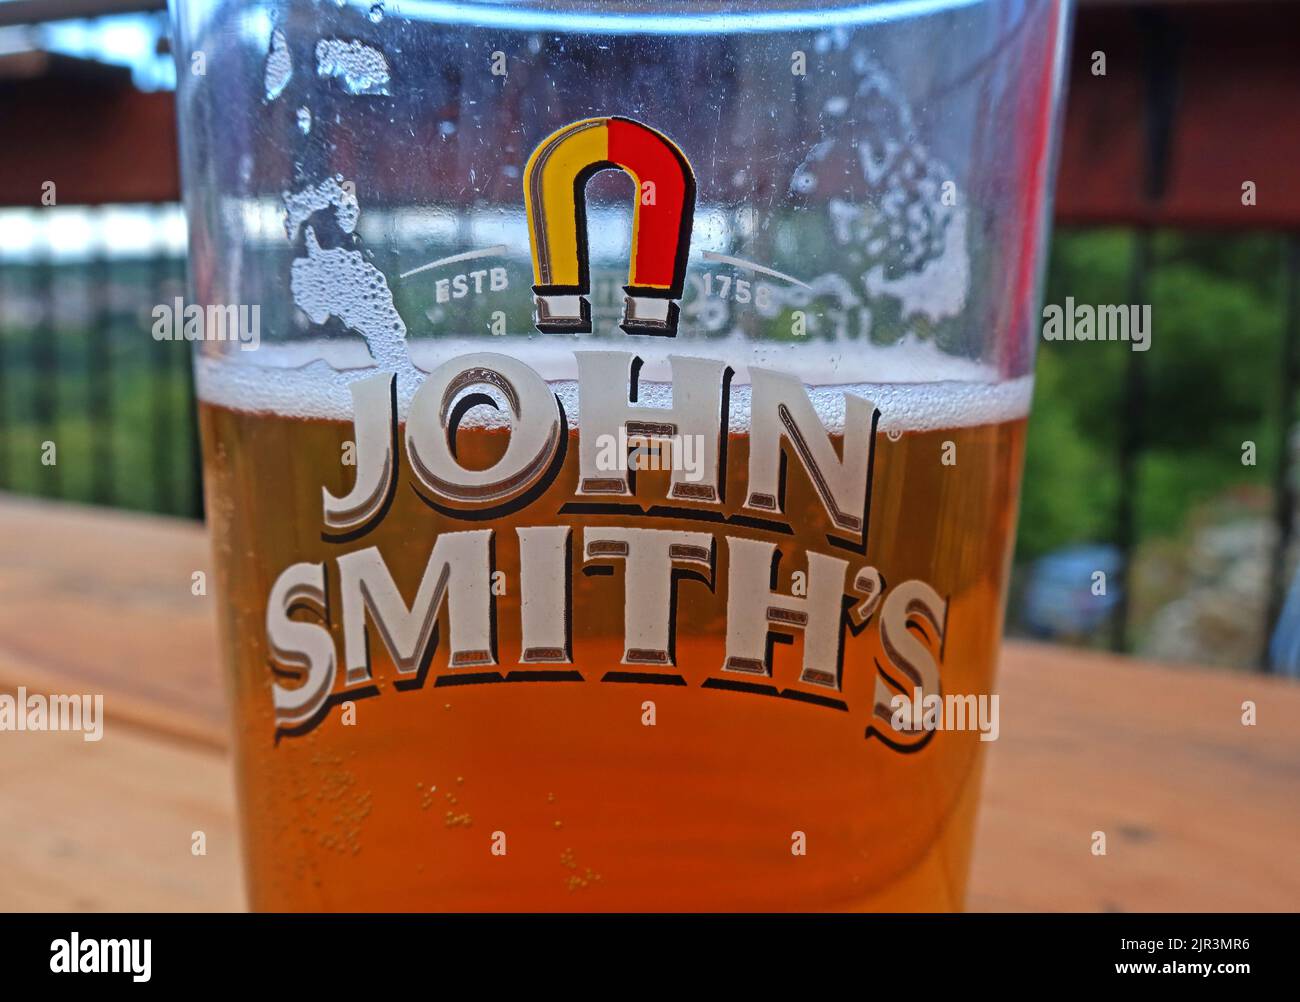 John Smiths, Magnet Ales, pint Glass, ESTB 1758, à moitié plein de bière, Llangollen, pays de Galles du Nord, Royaume-Uni - le plus vendu amer au Royaume-Uni Banque D'Images